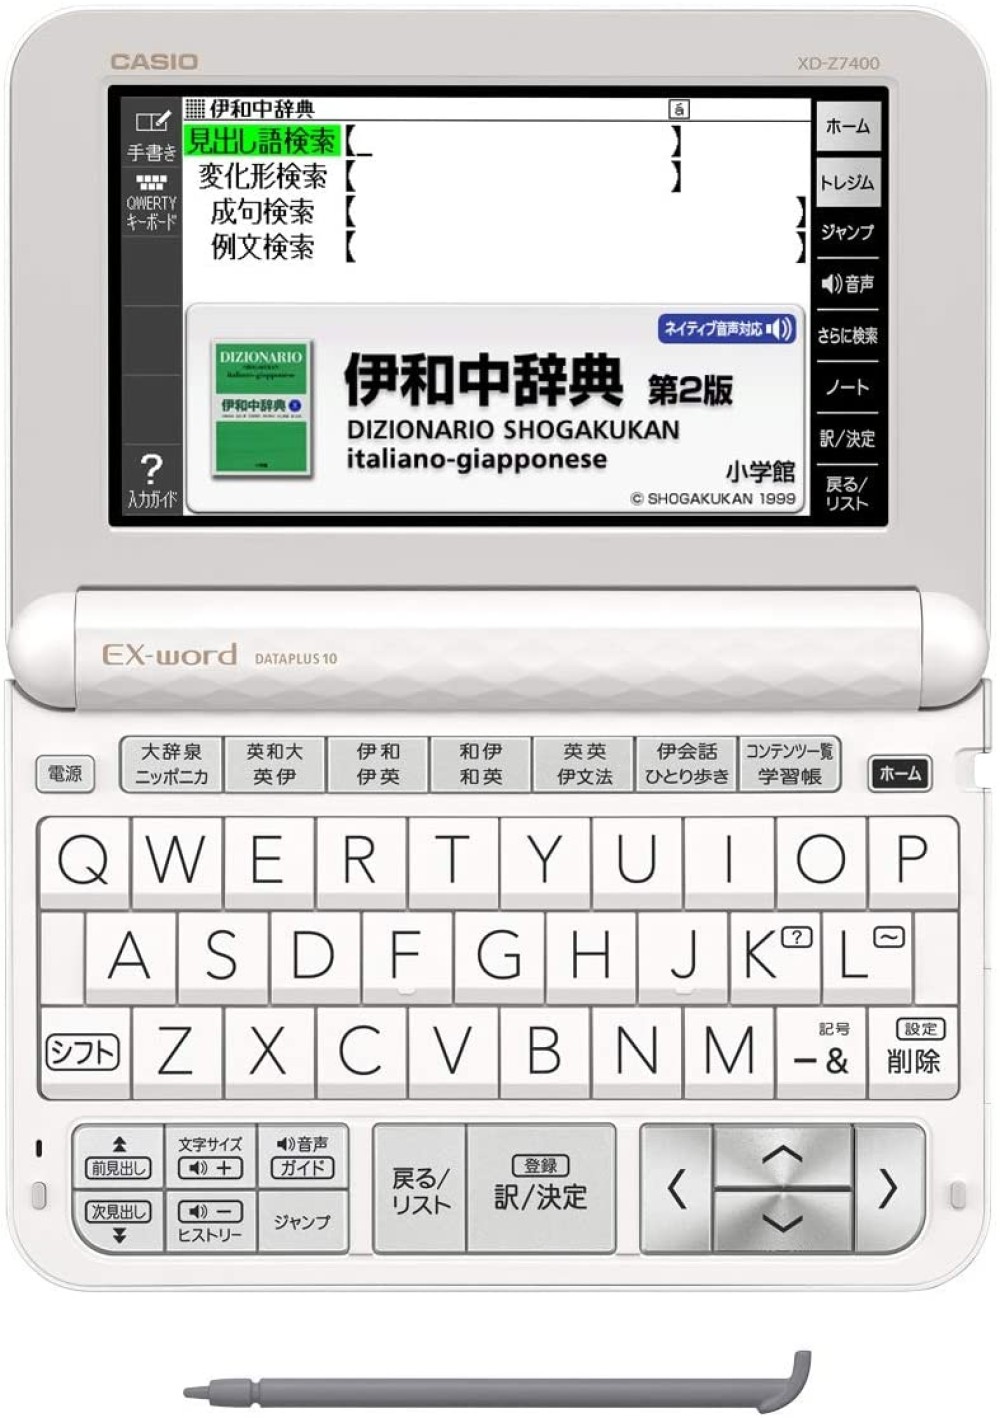 卡西欧EX-word XD-Z7400 英语意大利语中文日语电子词典| Denshi-Jisho.com